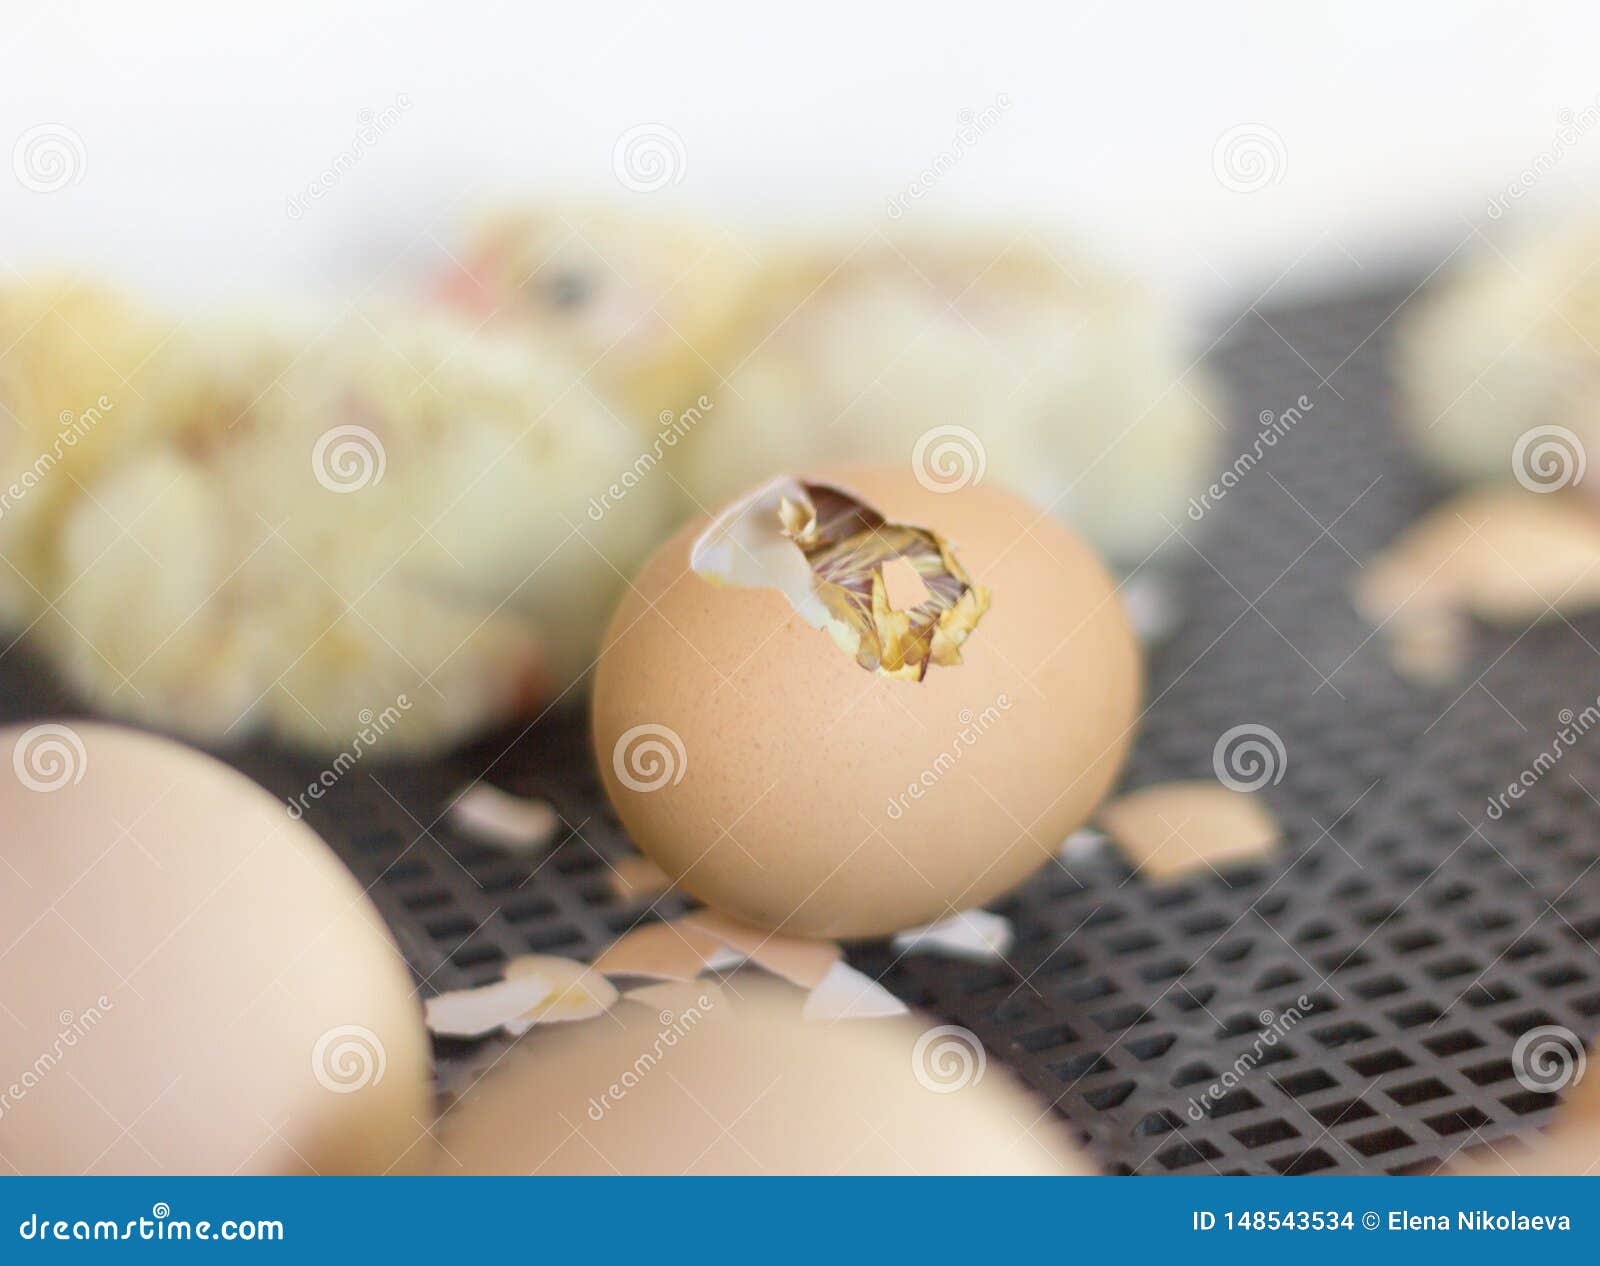 Фото развития цыпленка. Зародыш в яйце в инкубаторе. Формирование птенца в яйце.